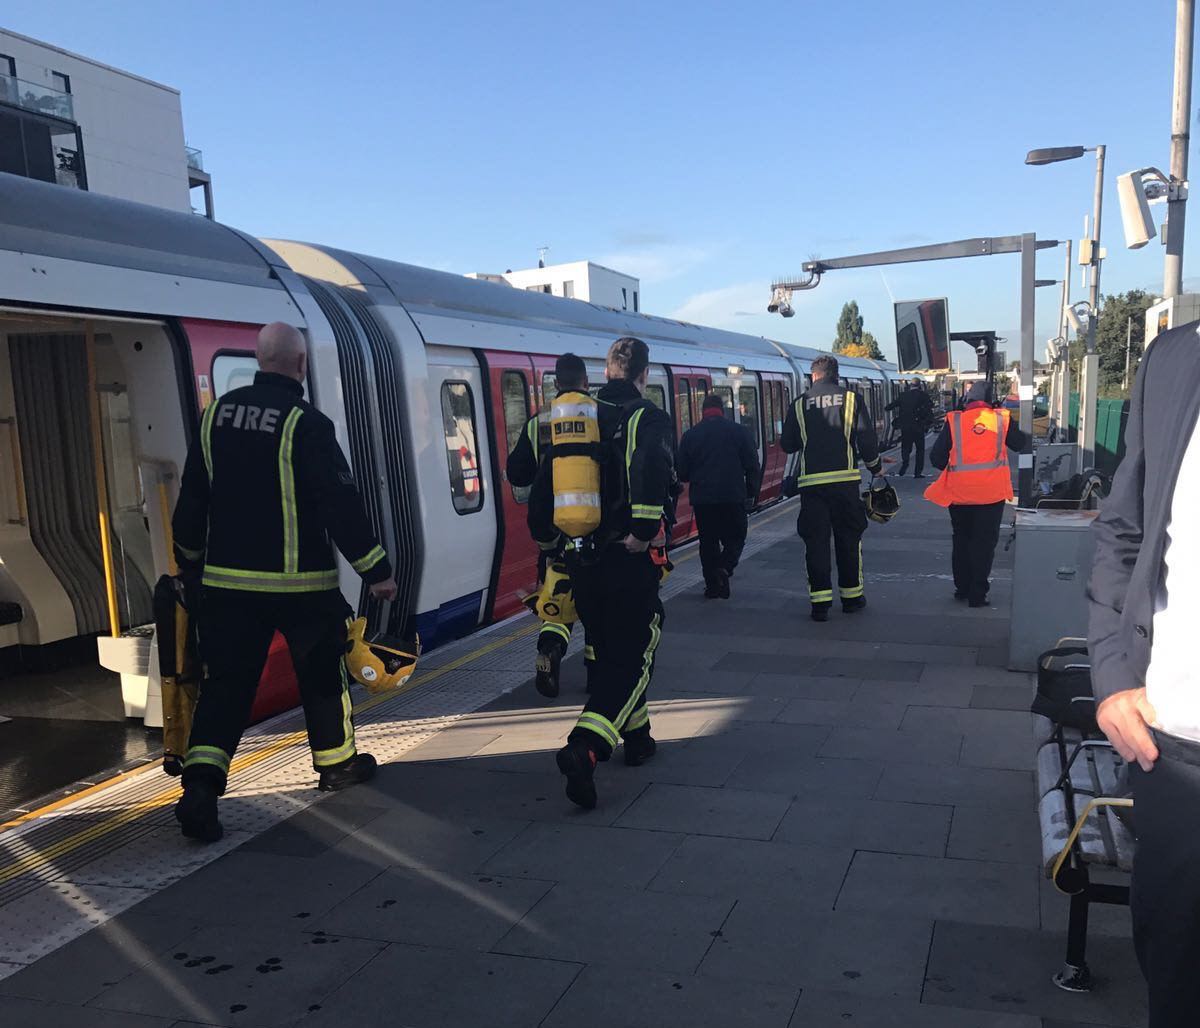 La explosión ocurrida en el tren causó pánico y varios heridos.